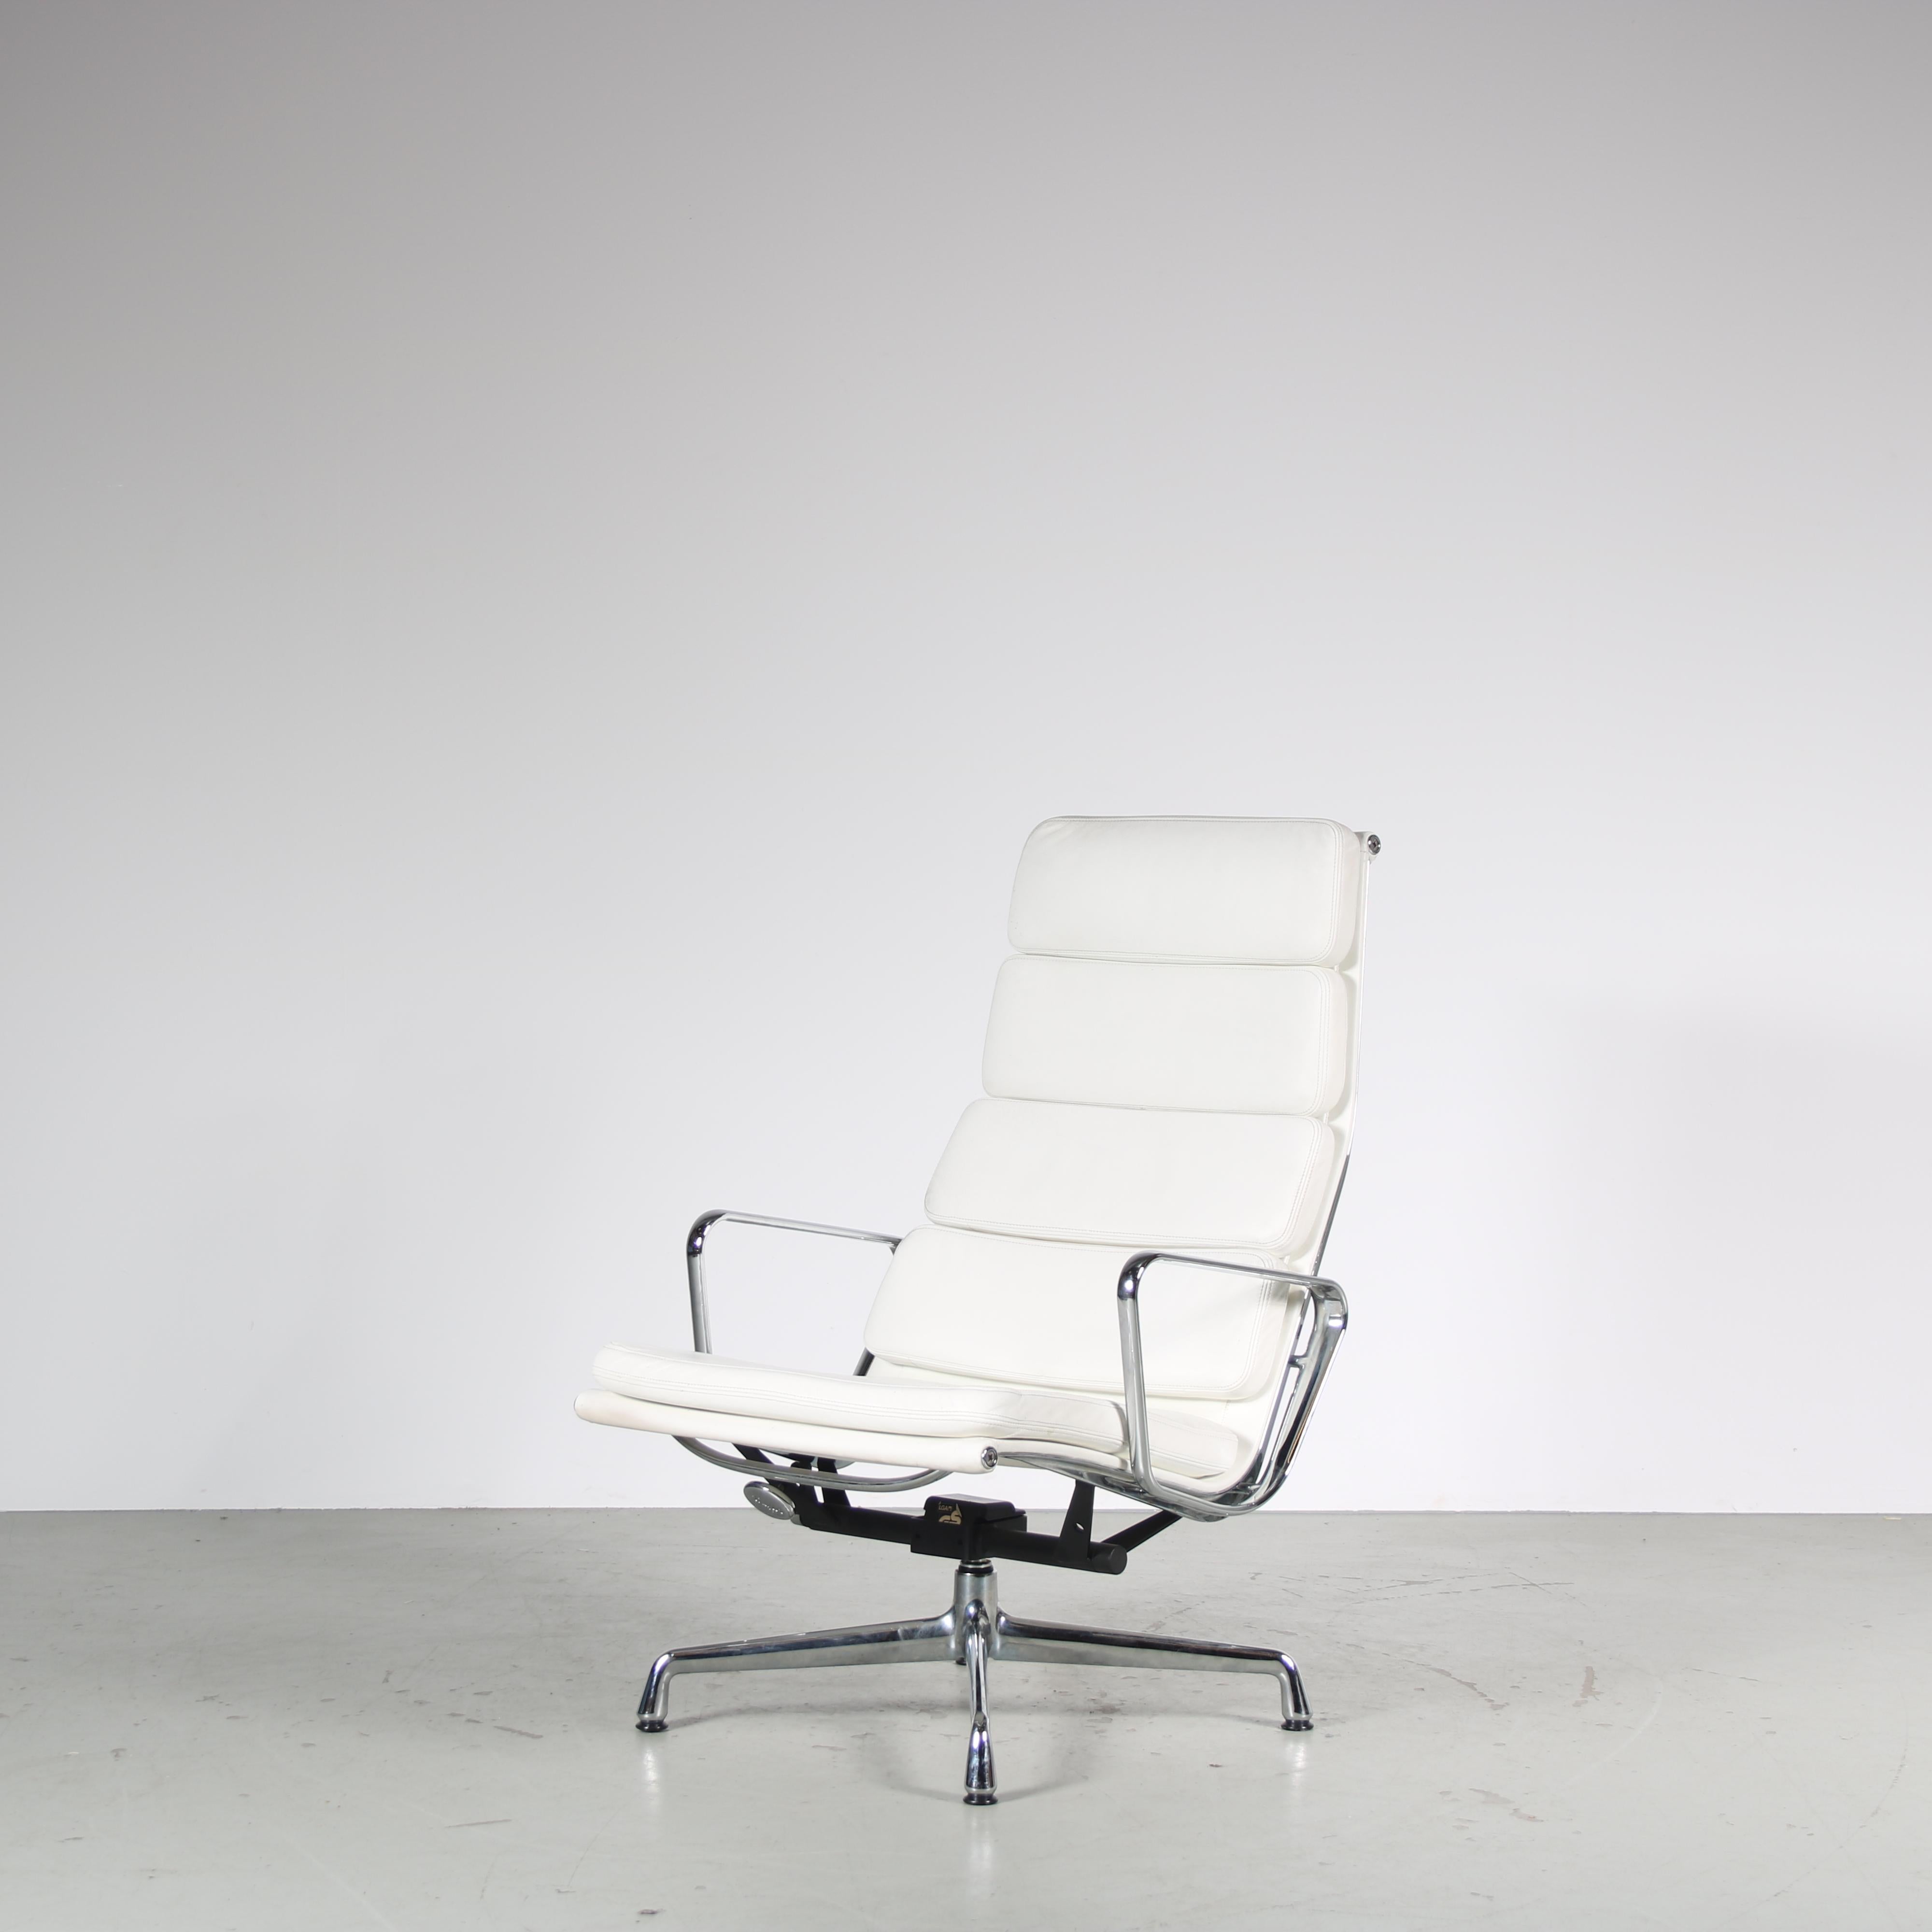 Magnifique chaise longue, modèle EA 222, conçue par Charles & Ray Eames et fabriquée par Vitra en Allemagne vers 1990.

Cette chaise accrocheuse est une pièce très reconnaissable du design du milieu du siècle ! Il est doté d'un cadre en métal chromé